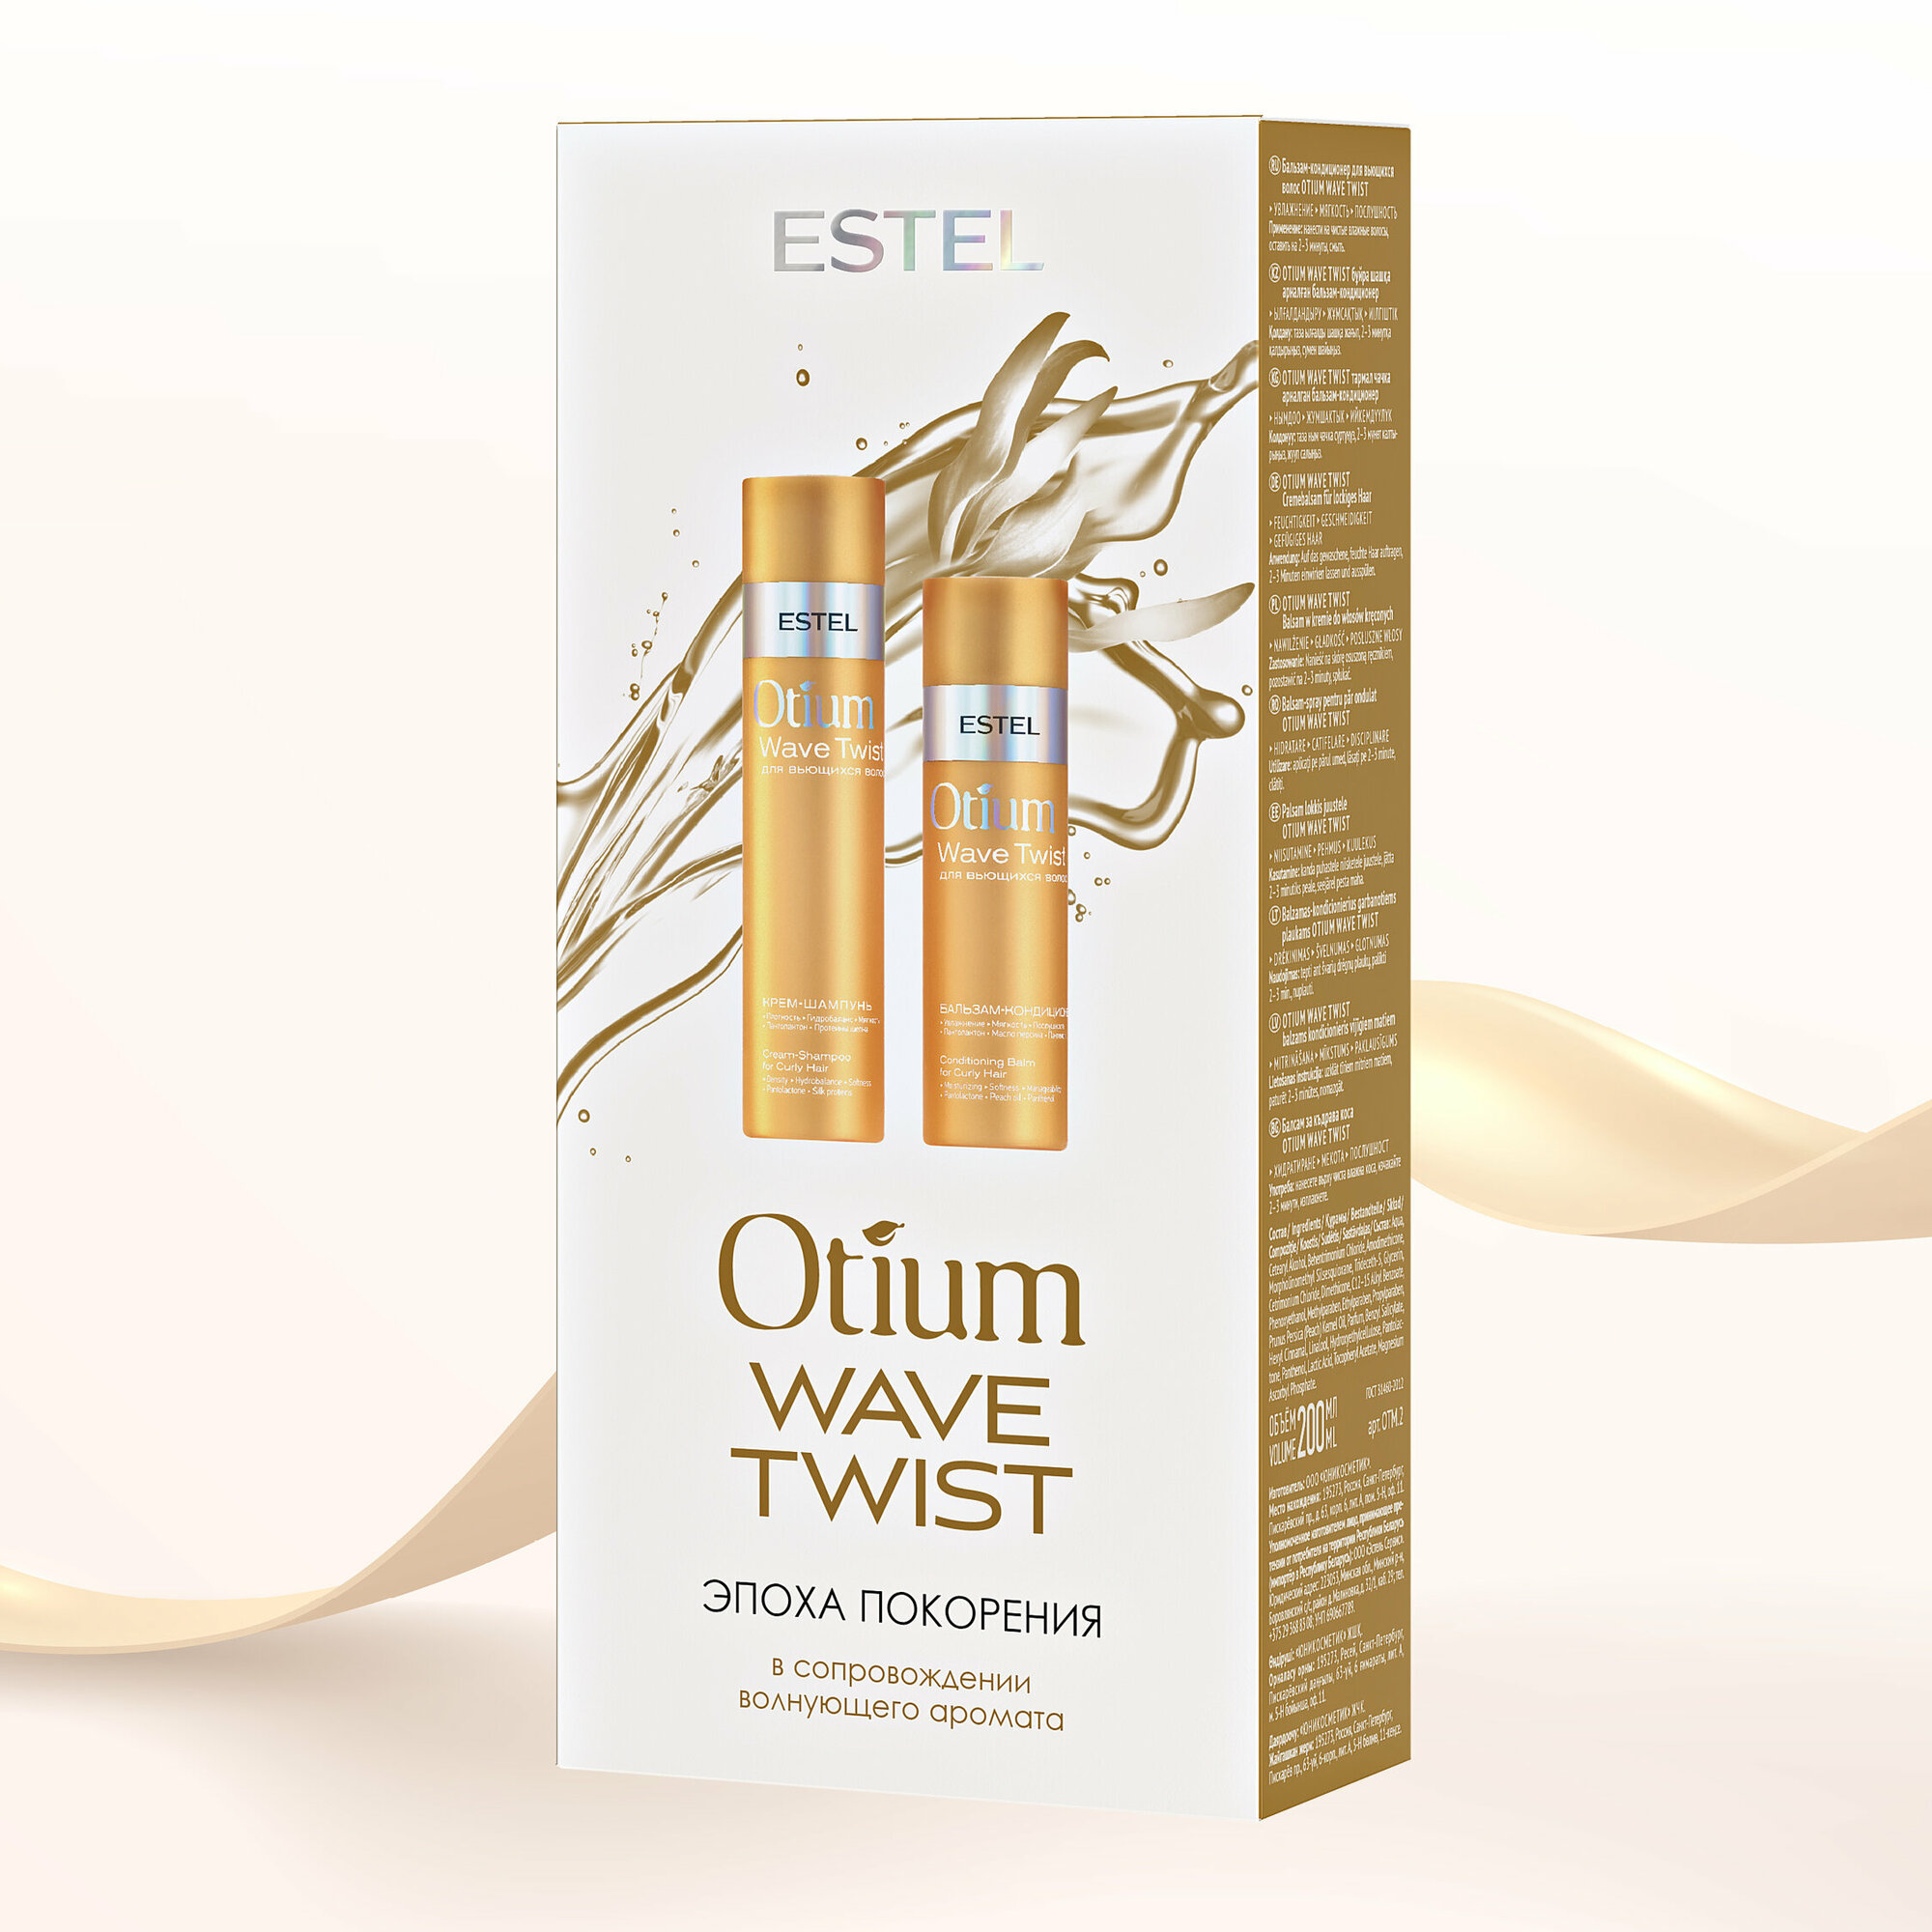 Набор для вьющихся волос OTIUM Wave Twist от бренда Estel